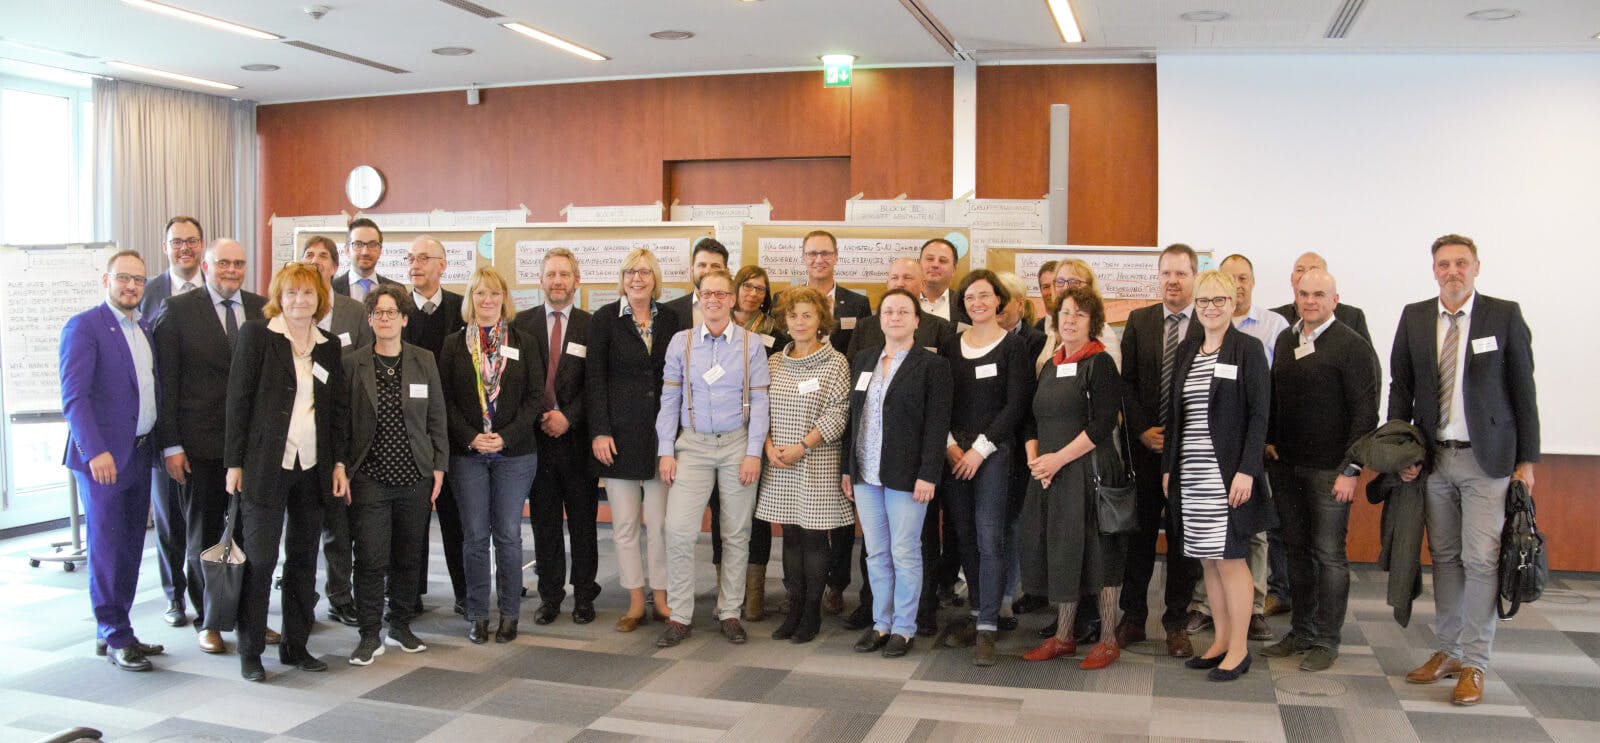 Heilmittelworkshop in Berlin: Therapeuten, Politik und Kassen diskutieren die Zukunft der Branche